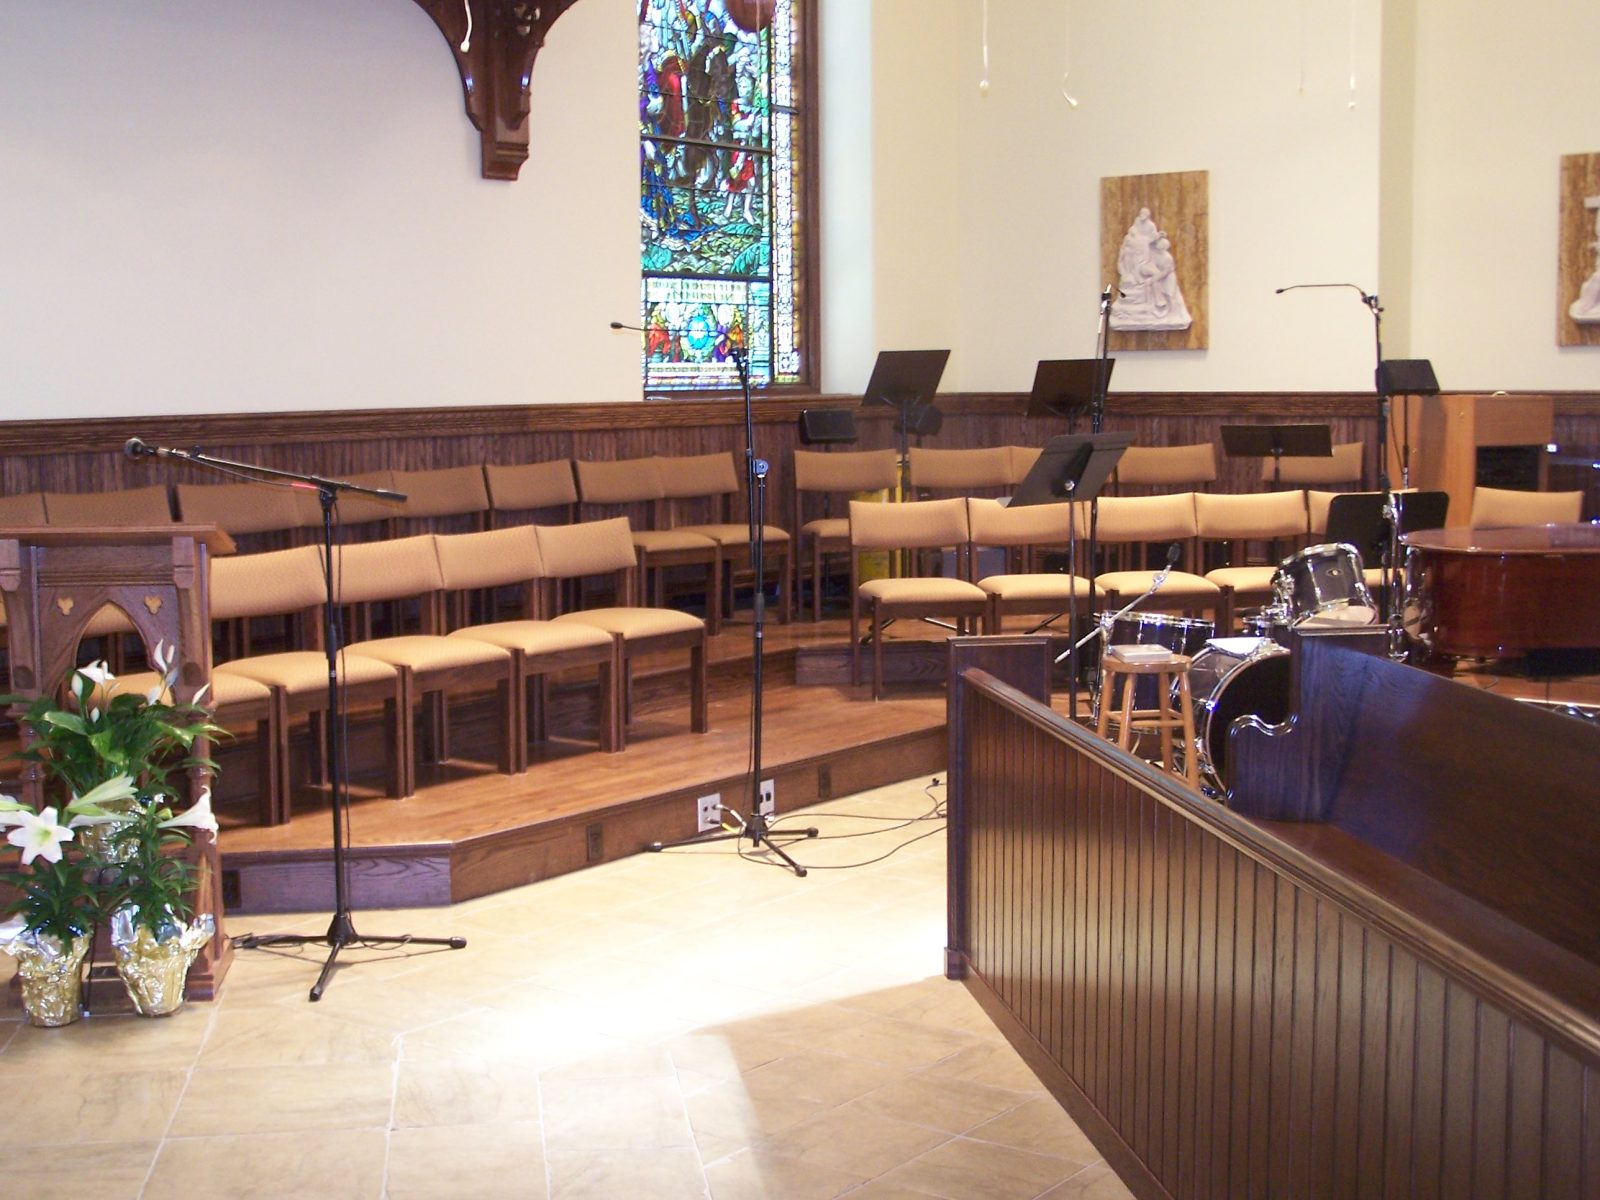 chapel chairs, church chairs, choir chairs, church furniture